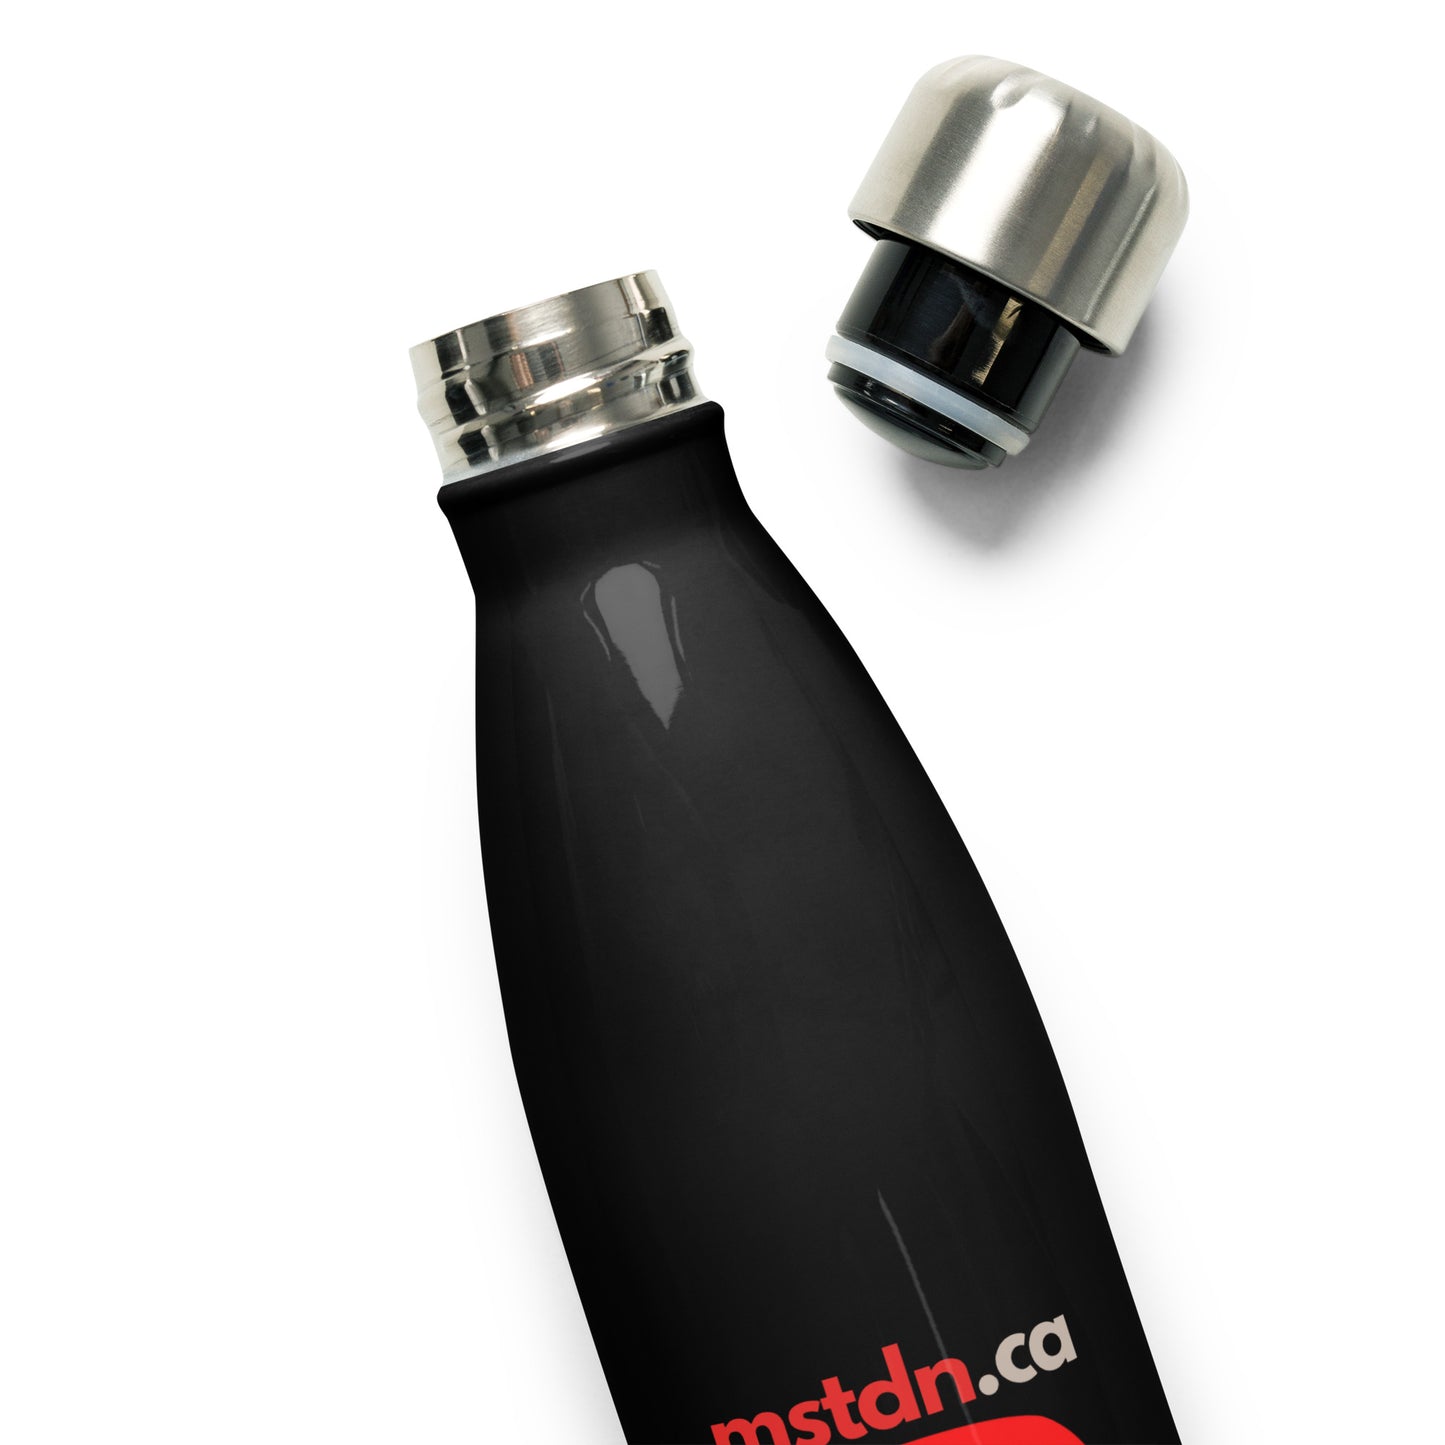 mstdn.ca Stainless Steel Water Bottle